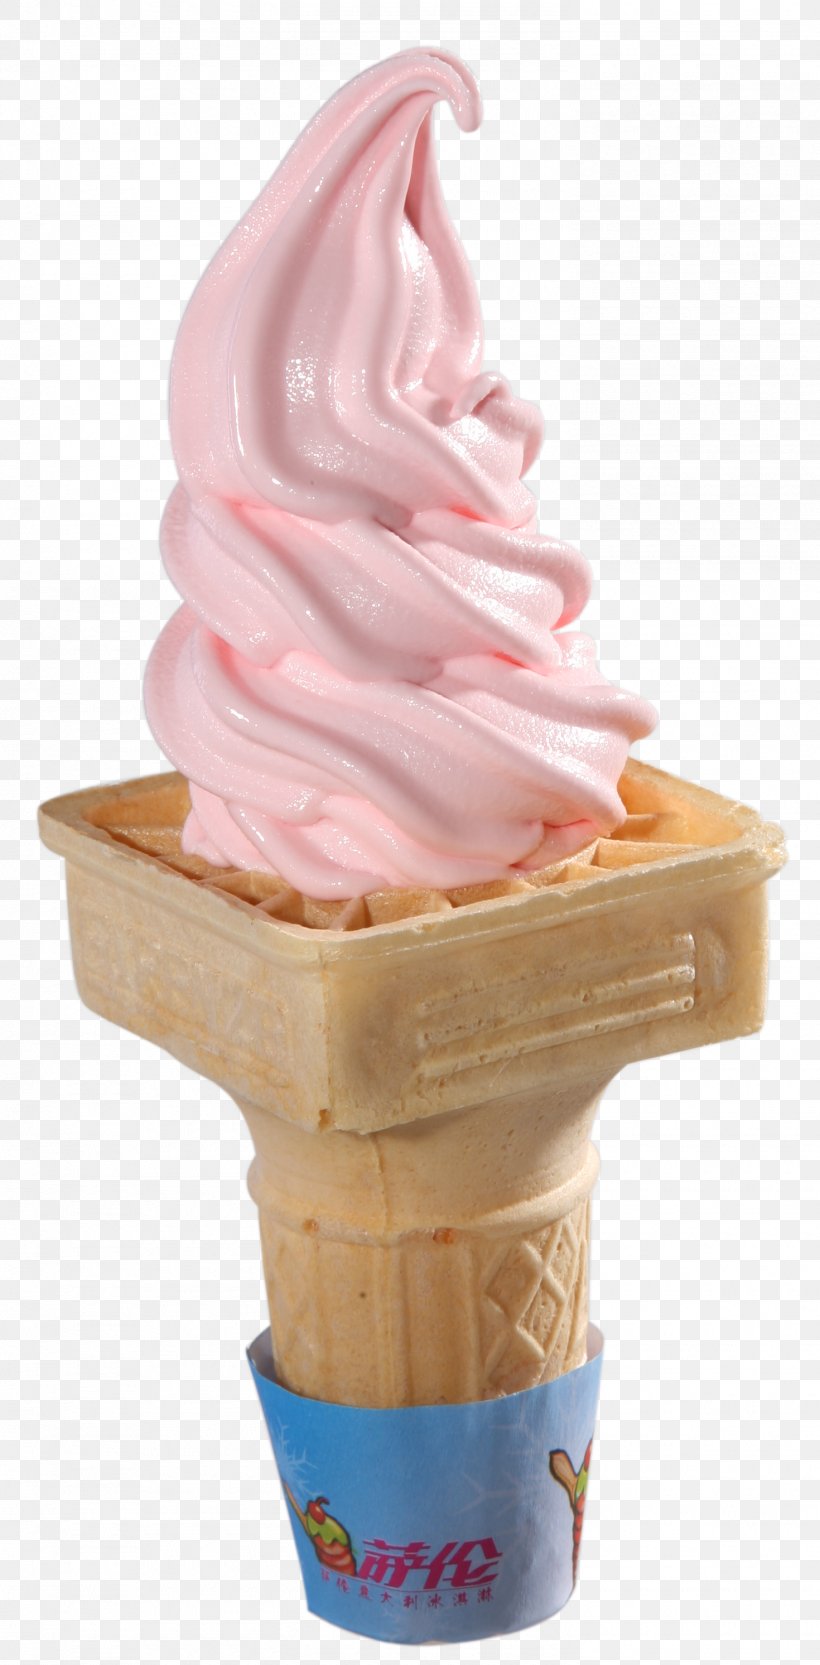 Ice Cream Cones Sundae Milkshake Frozen Yogurt, PNG, 1470x2985px, Ice Cream, Cream, Dairy Product, Dessert, Dondurma Download Free